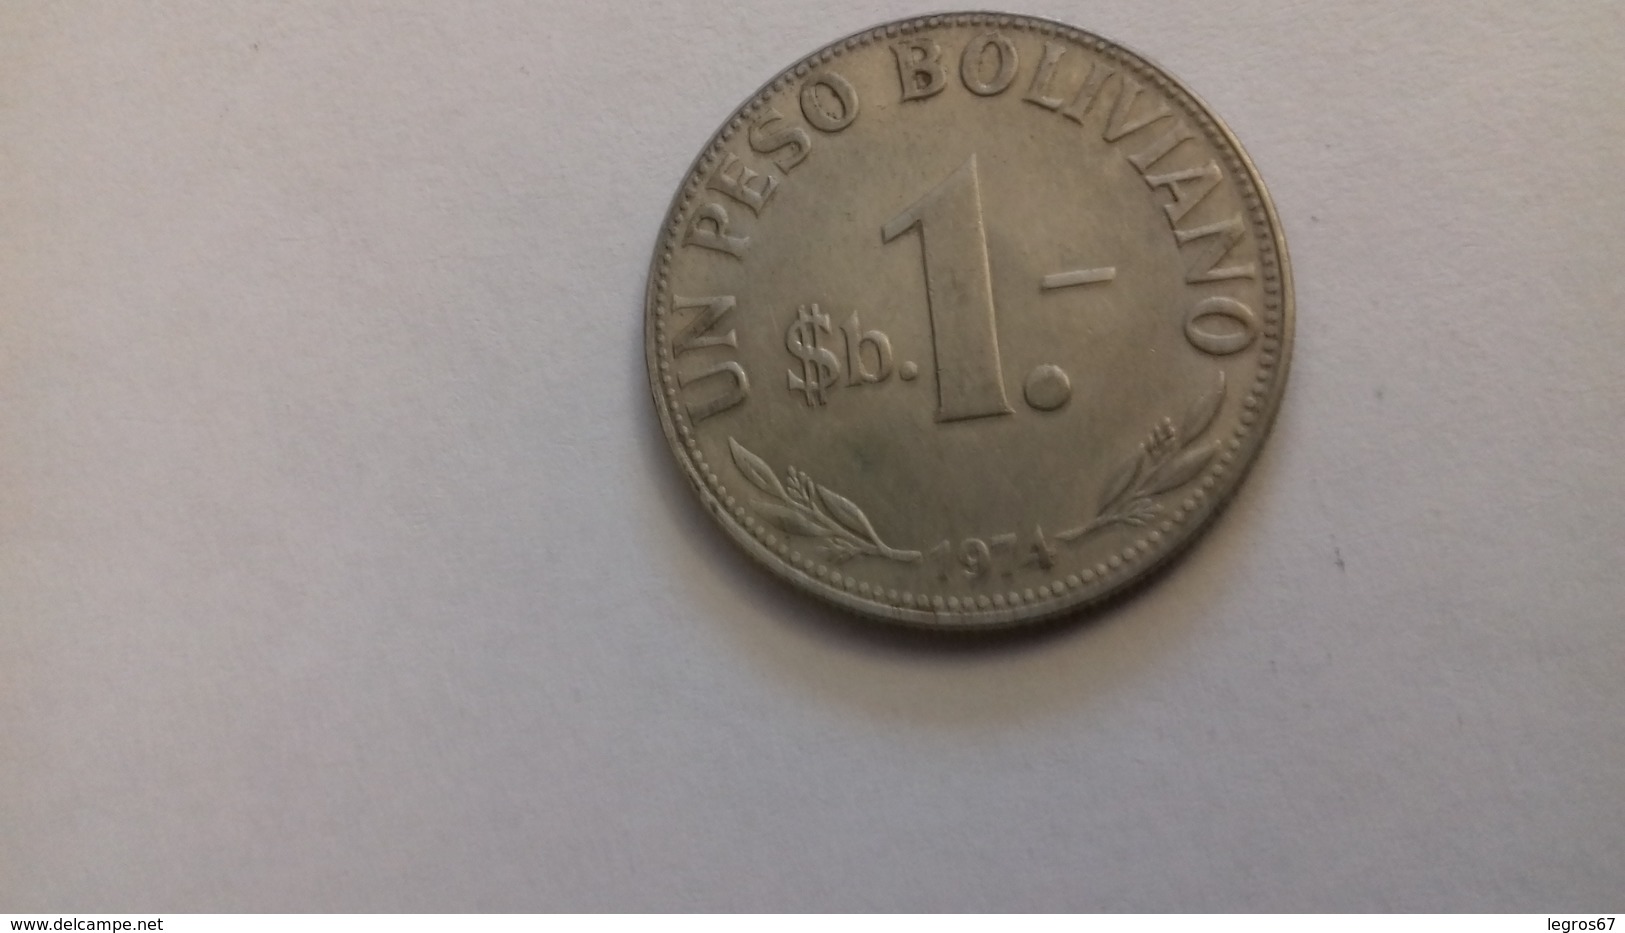 PIECE DE 1 PESO BOLIVIE 1974 - Bolivie